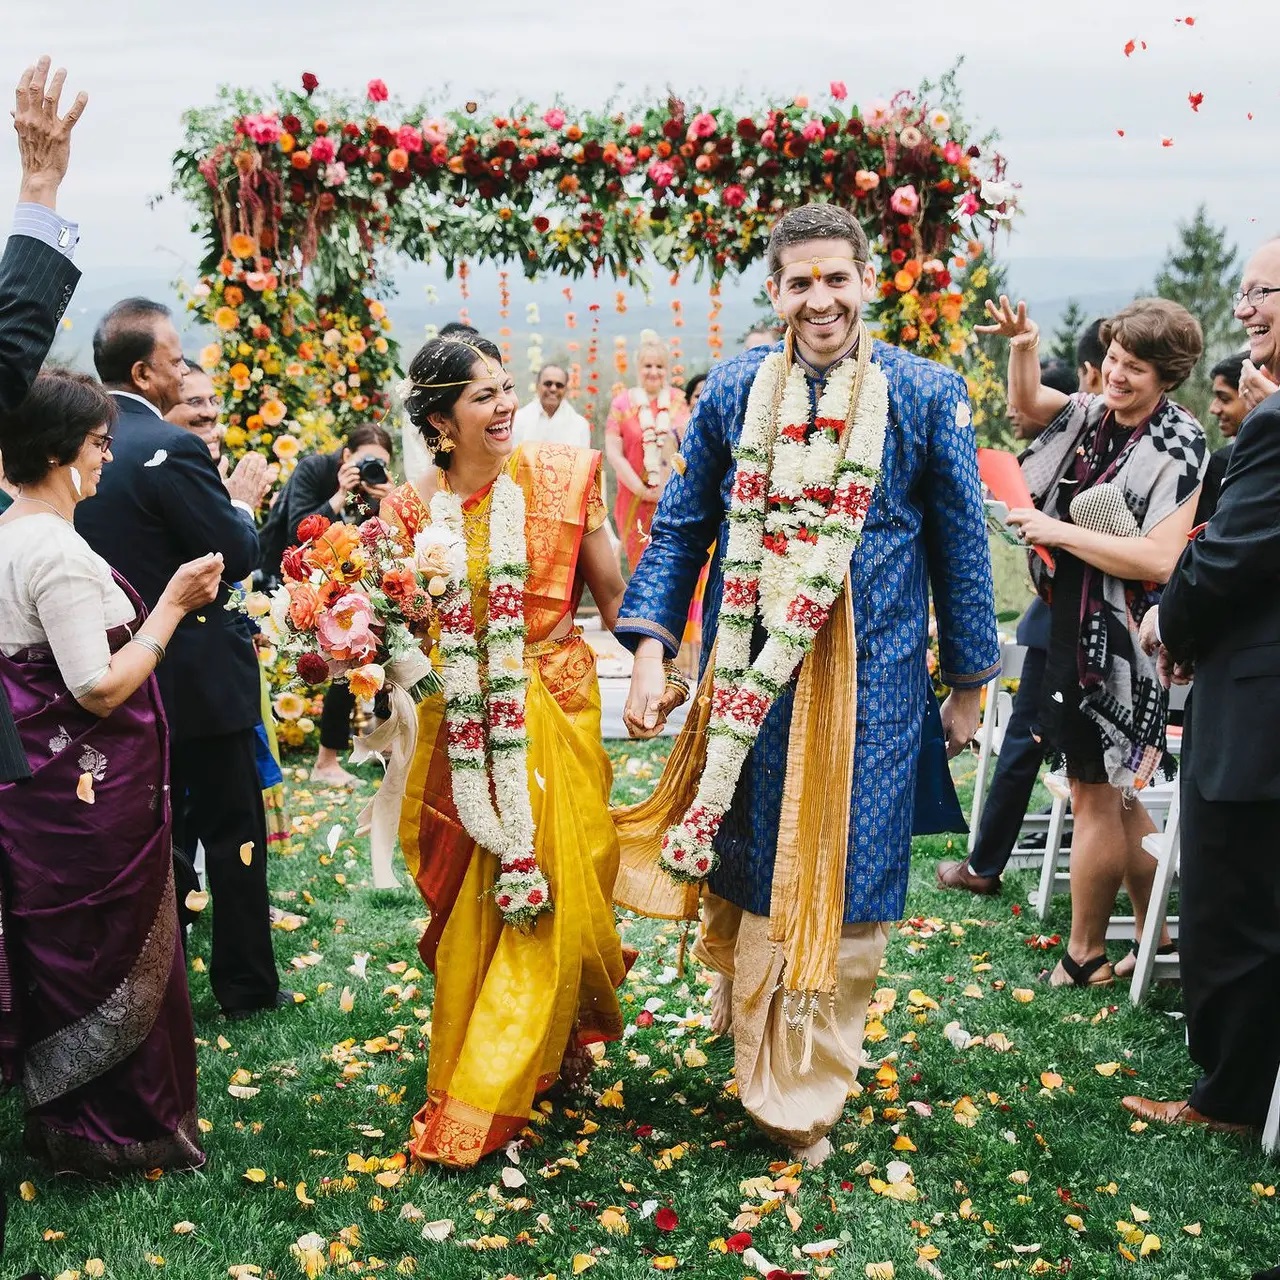 Casamento indiano: conheça as tradições dessa cultura e inspire-se